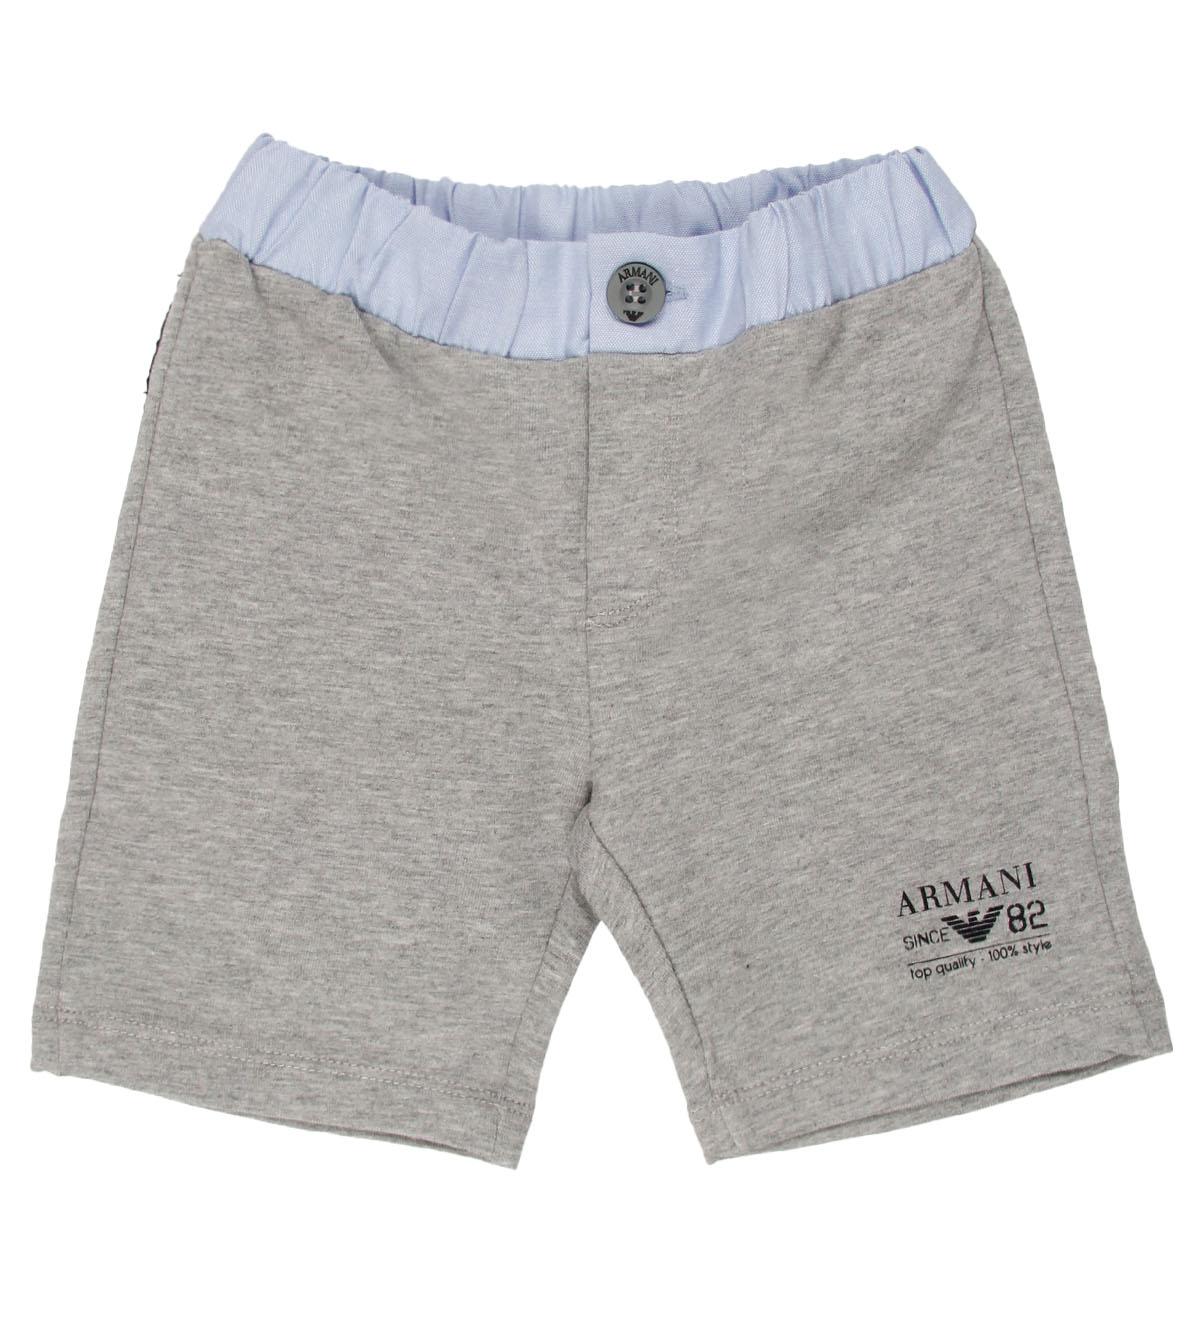 Foto Armani Junior Grey Bermuda Pants-18 Months foto 411758